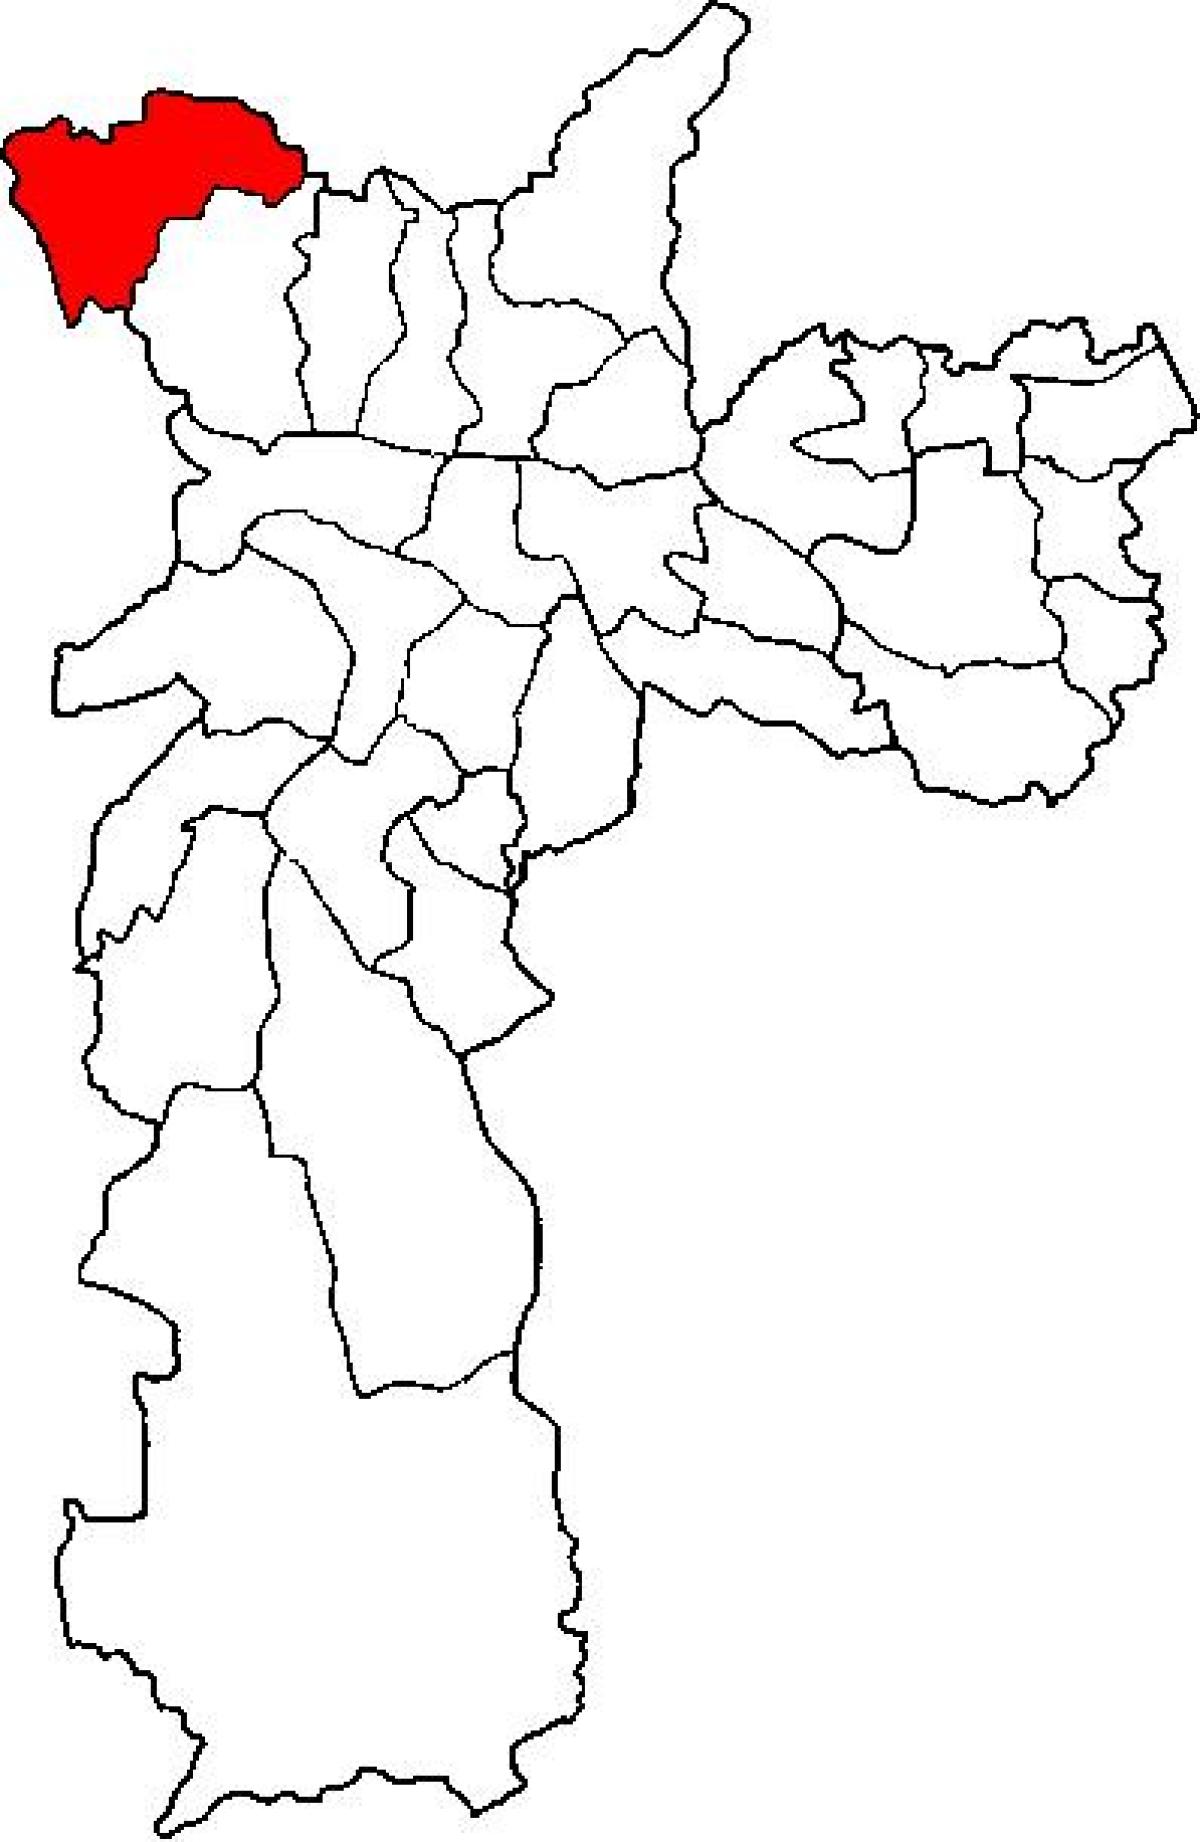 แผนที่ของ Perus รายการย่อยขอ prefecture São Paulo